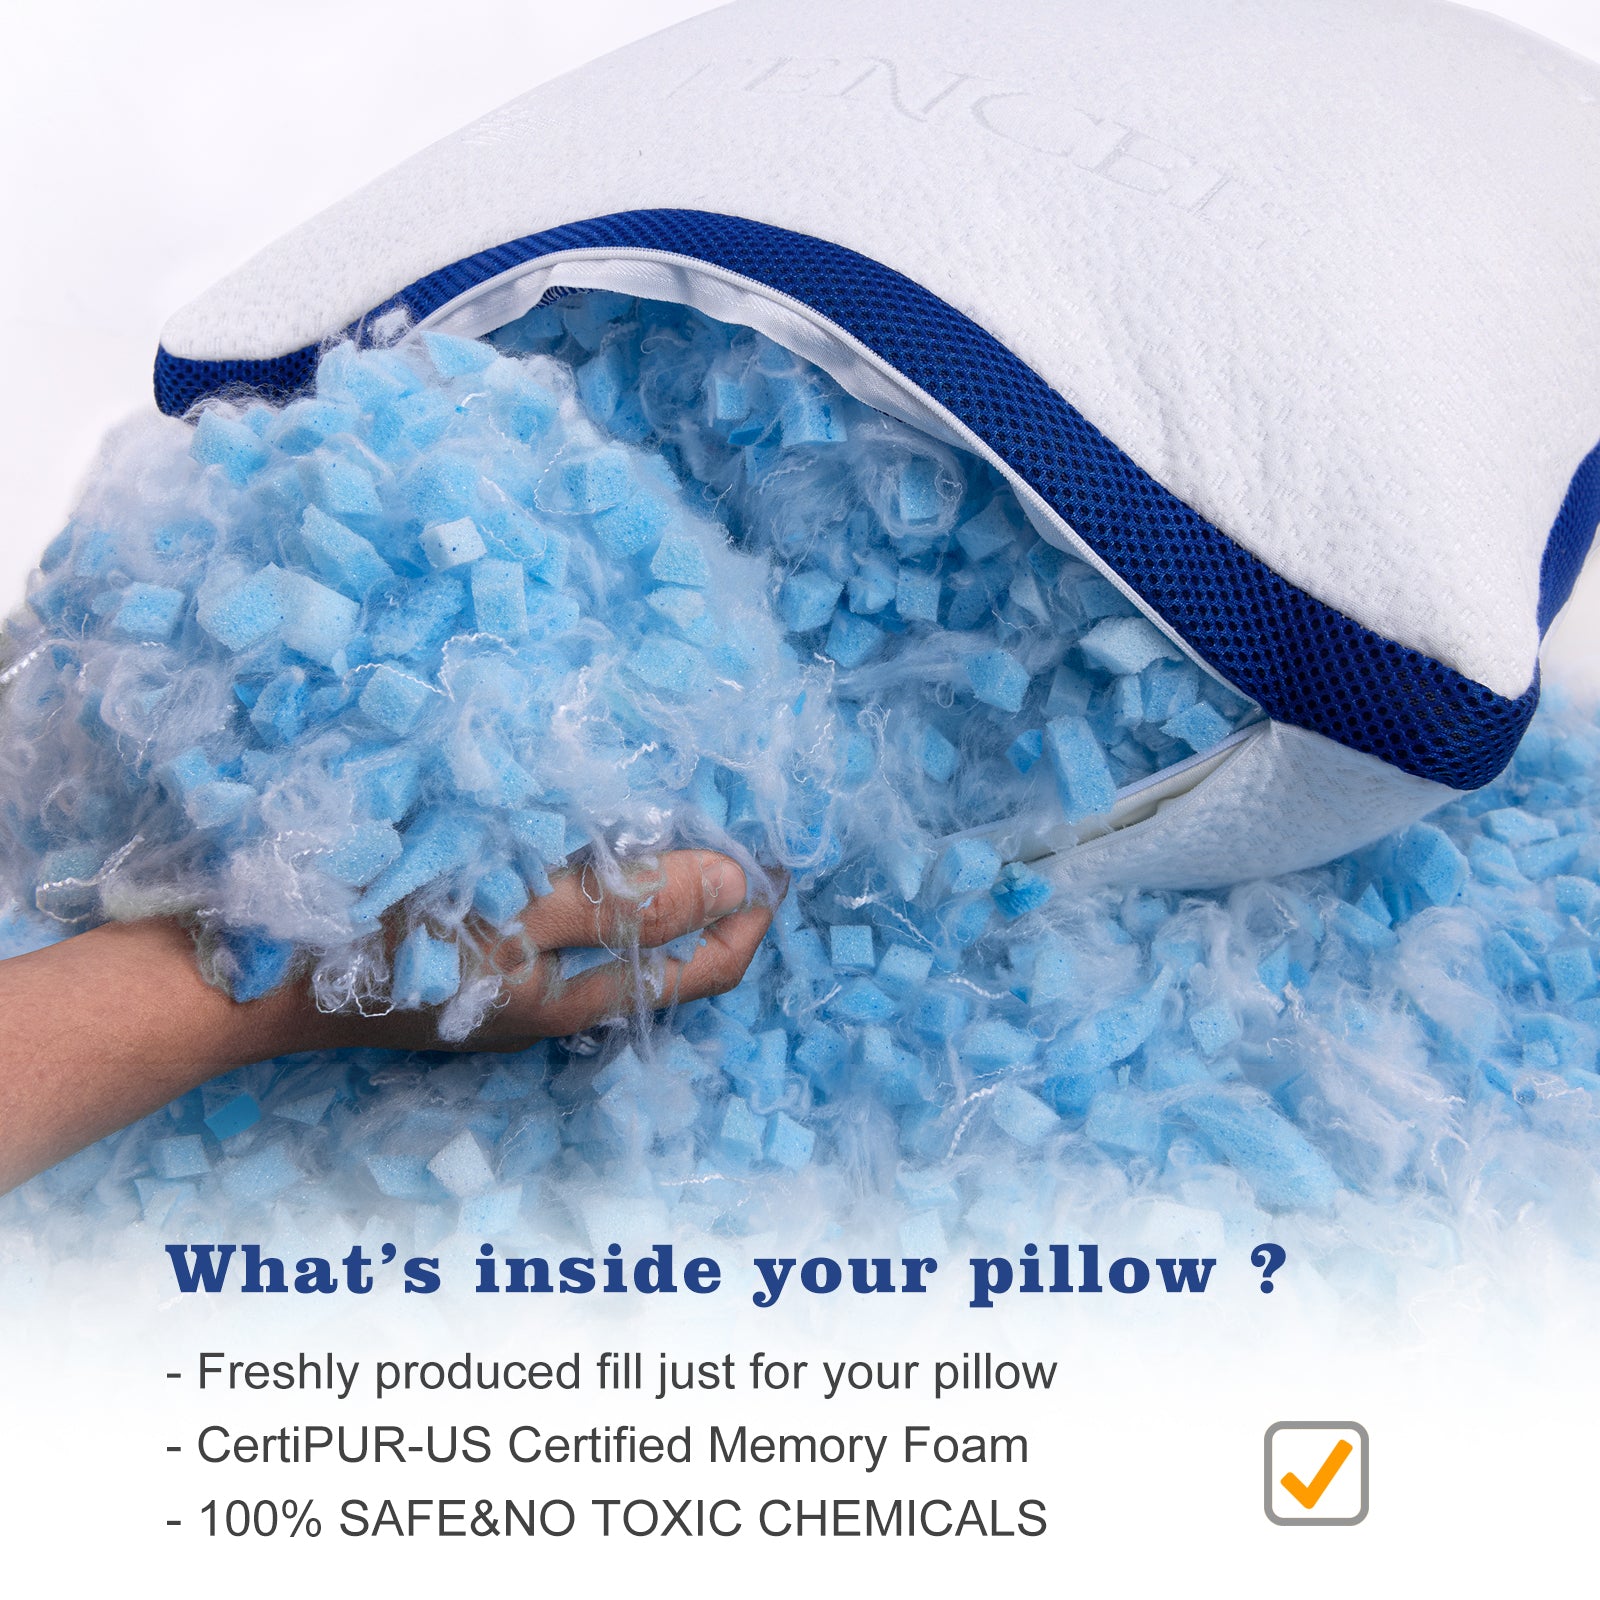 OYT Shredded Memory Foam Pillows Set